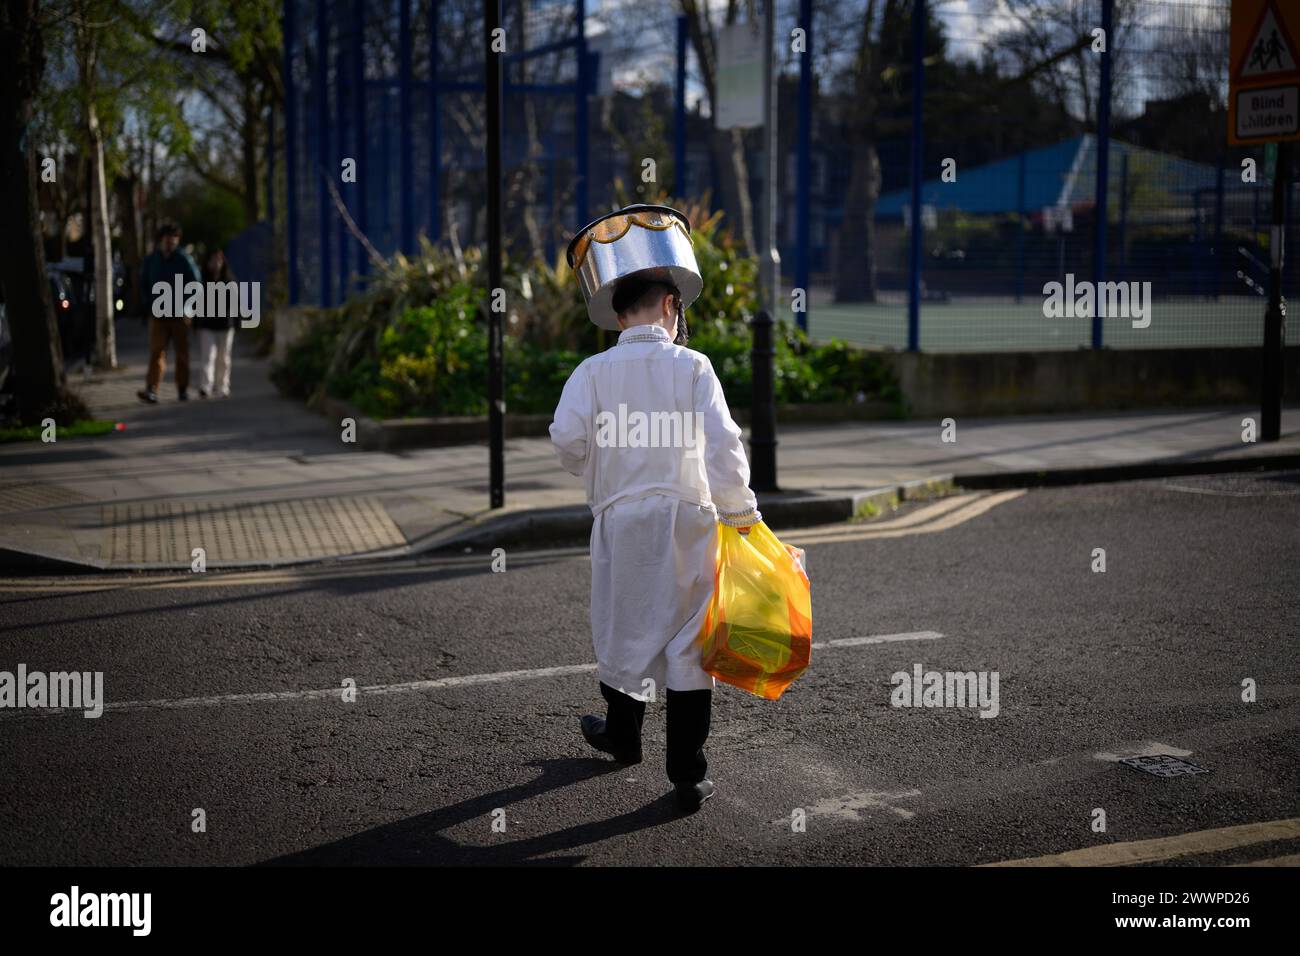 LONDRES, Royaume-Uni, 24 mars. La communauté juive de Stamford Hill, Londres célèbre la fête religieuse de Pourim. Les jeunes hommes dansent dans les rues et les enfants s'habillent de masques et de costumes. Crédit : Justin Griffiths-Williams/Alamy Live News Banque D'Images